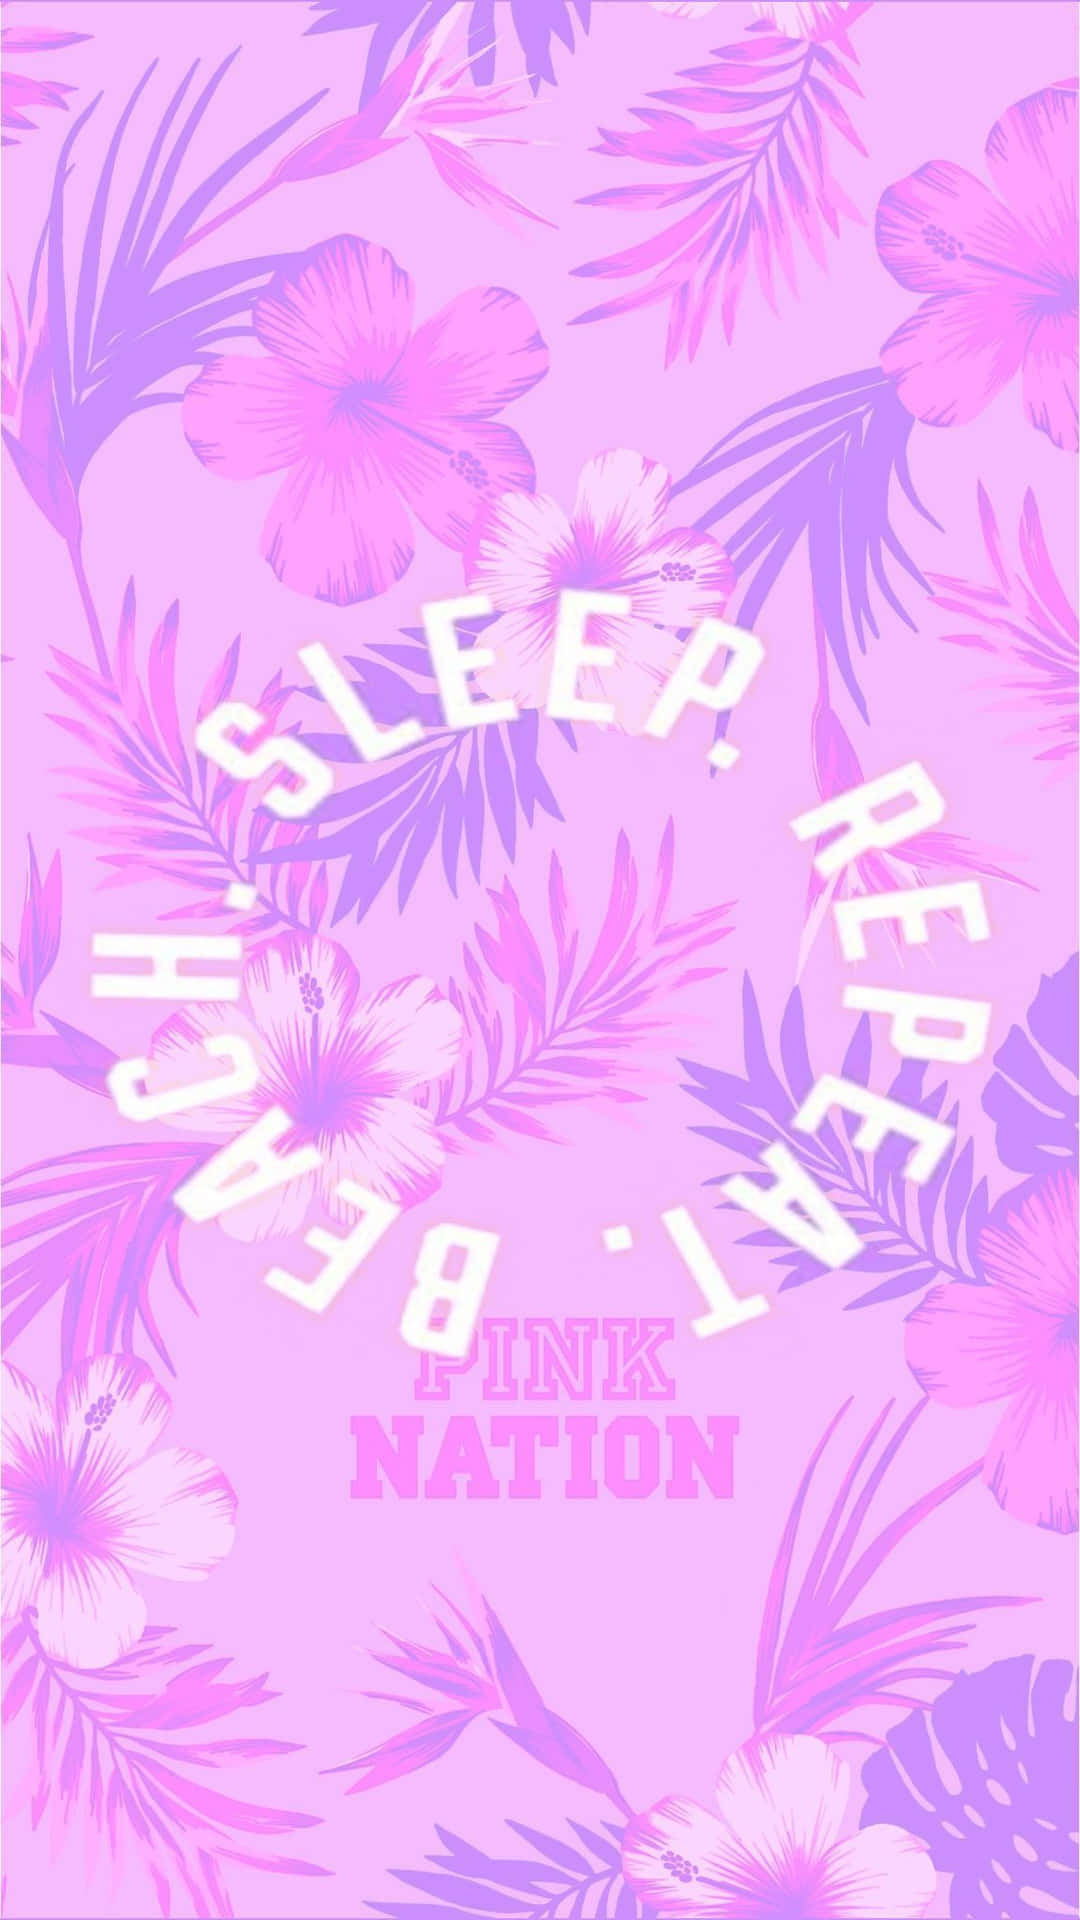 Sov, spis, vær et nation - rosa Wallpaper